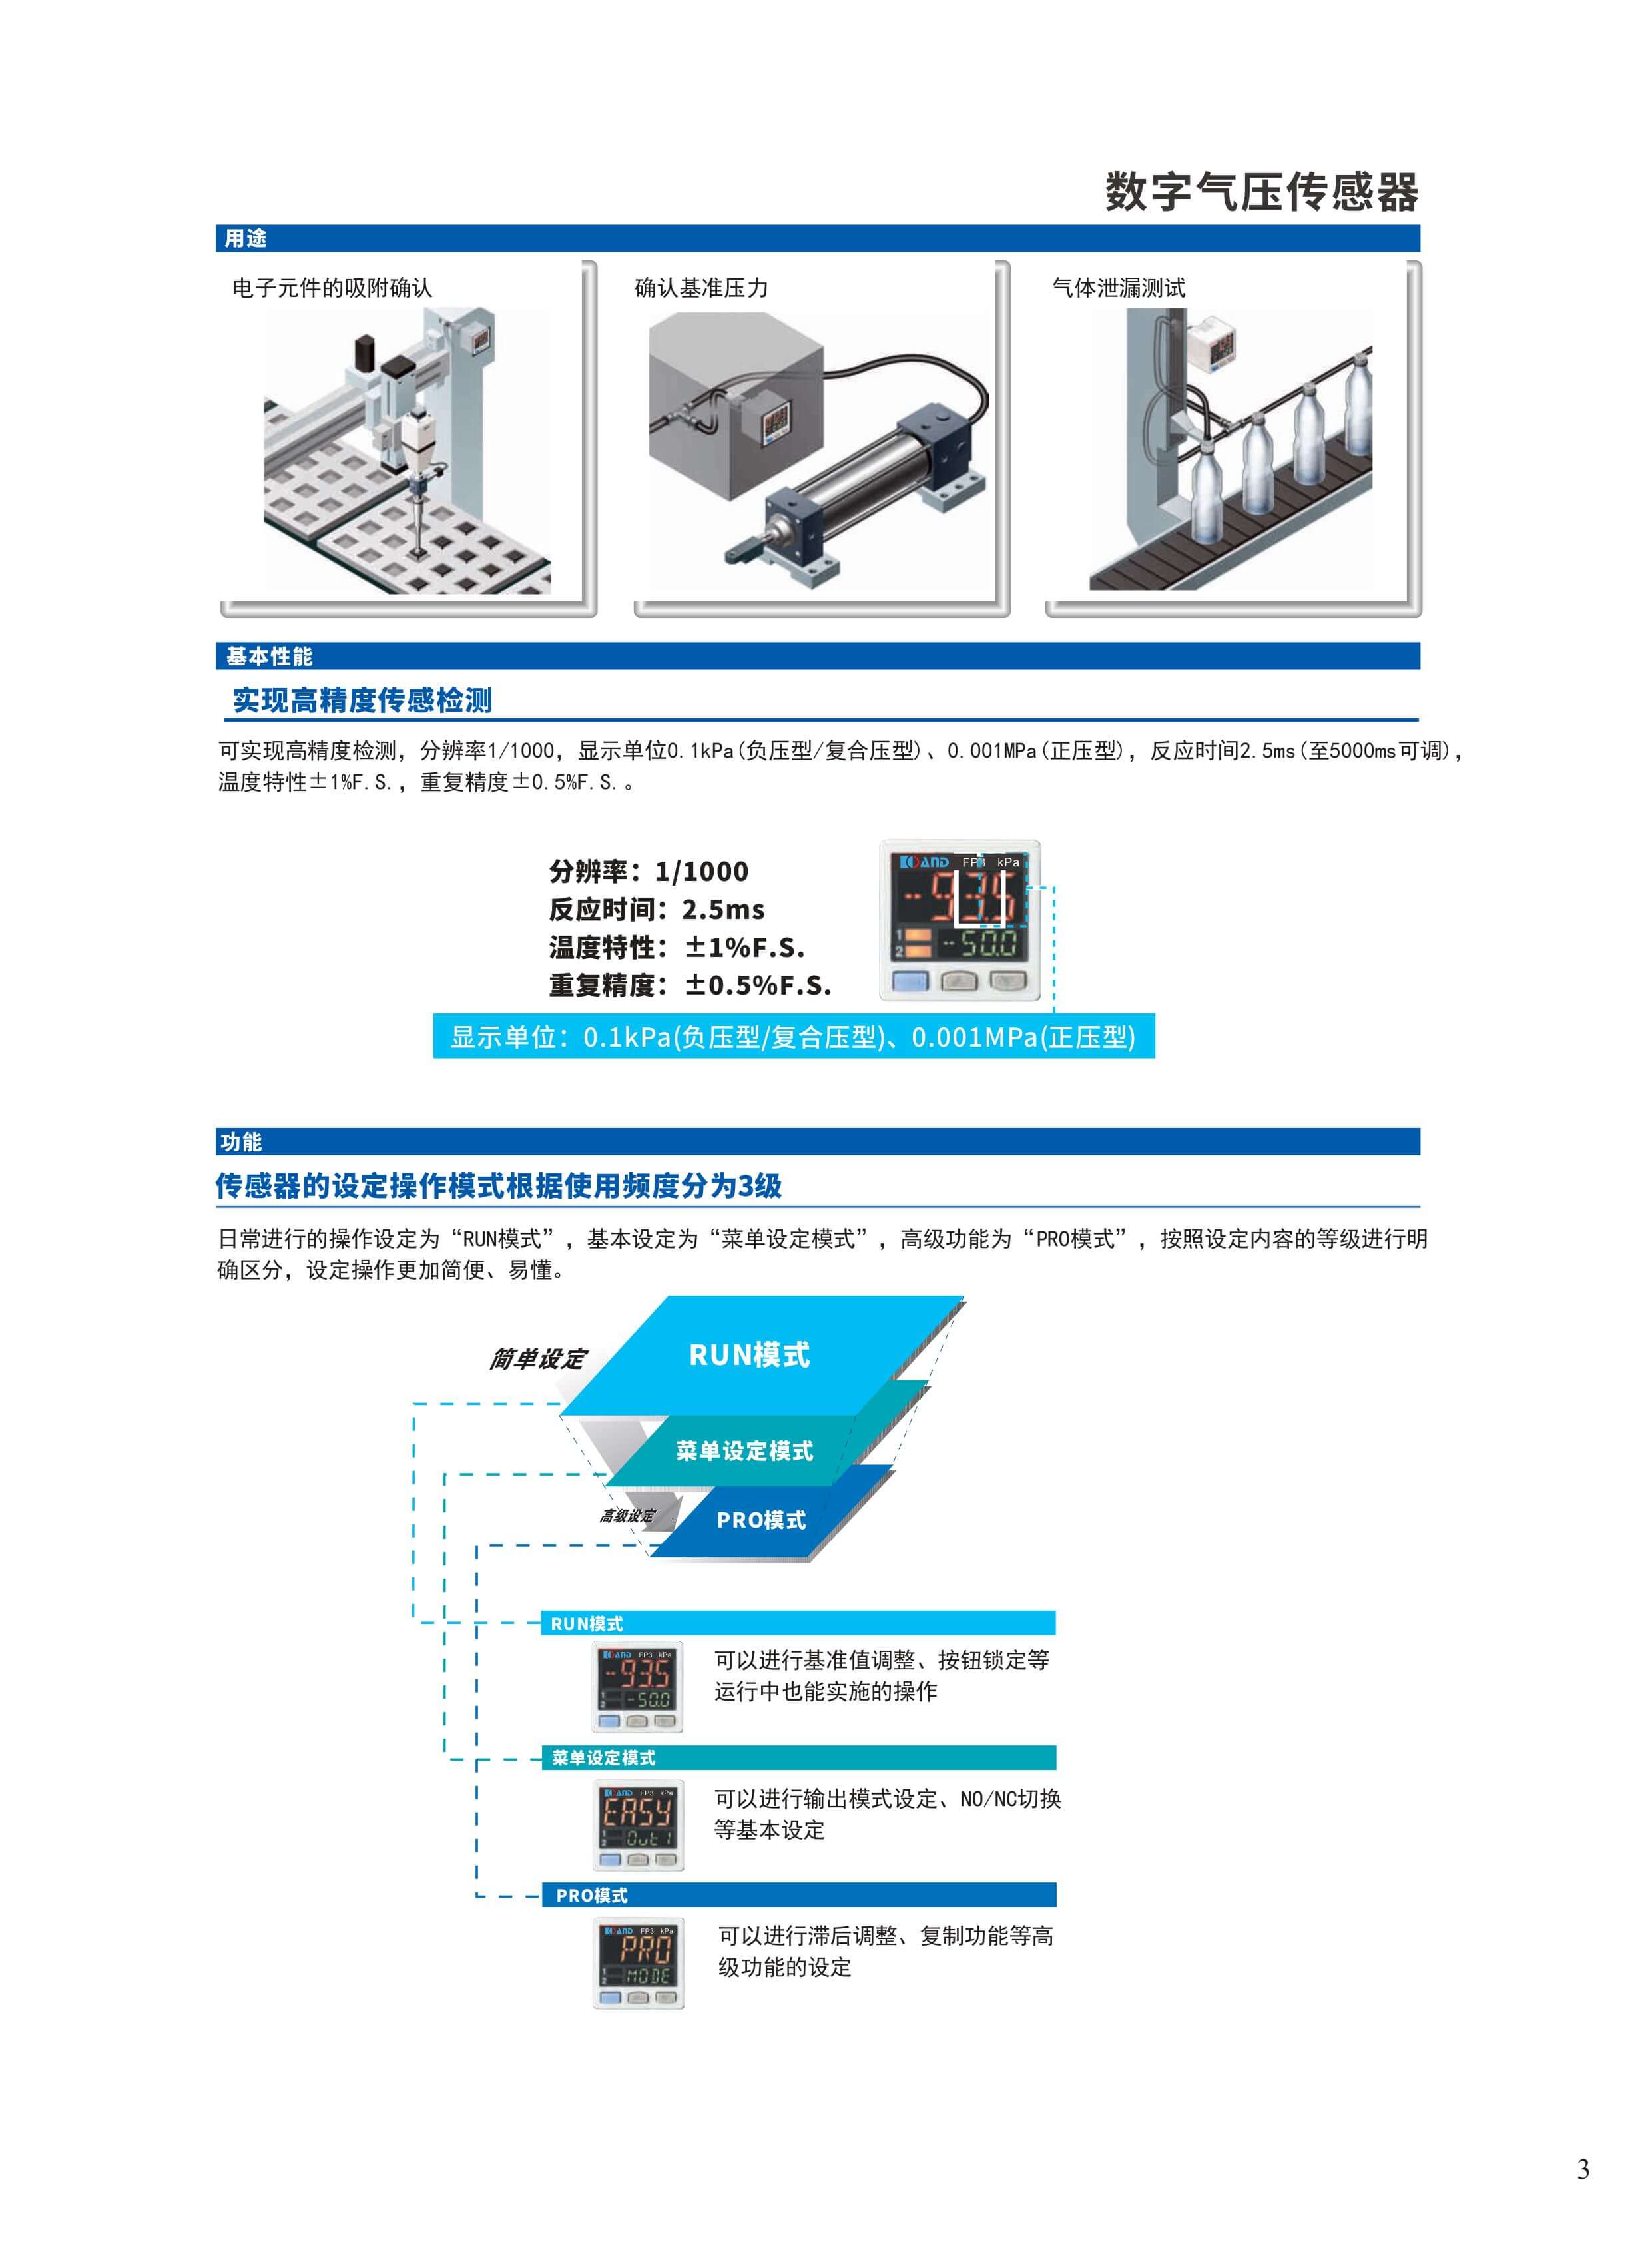 水平四关节机械手 高可靠性伺服拧紧系统设备 深圳市艾而特工业自动化设备有限公司